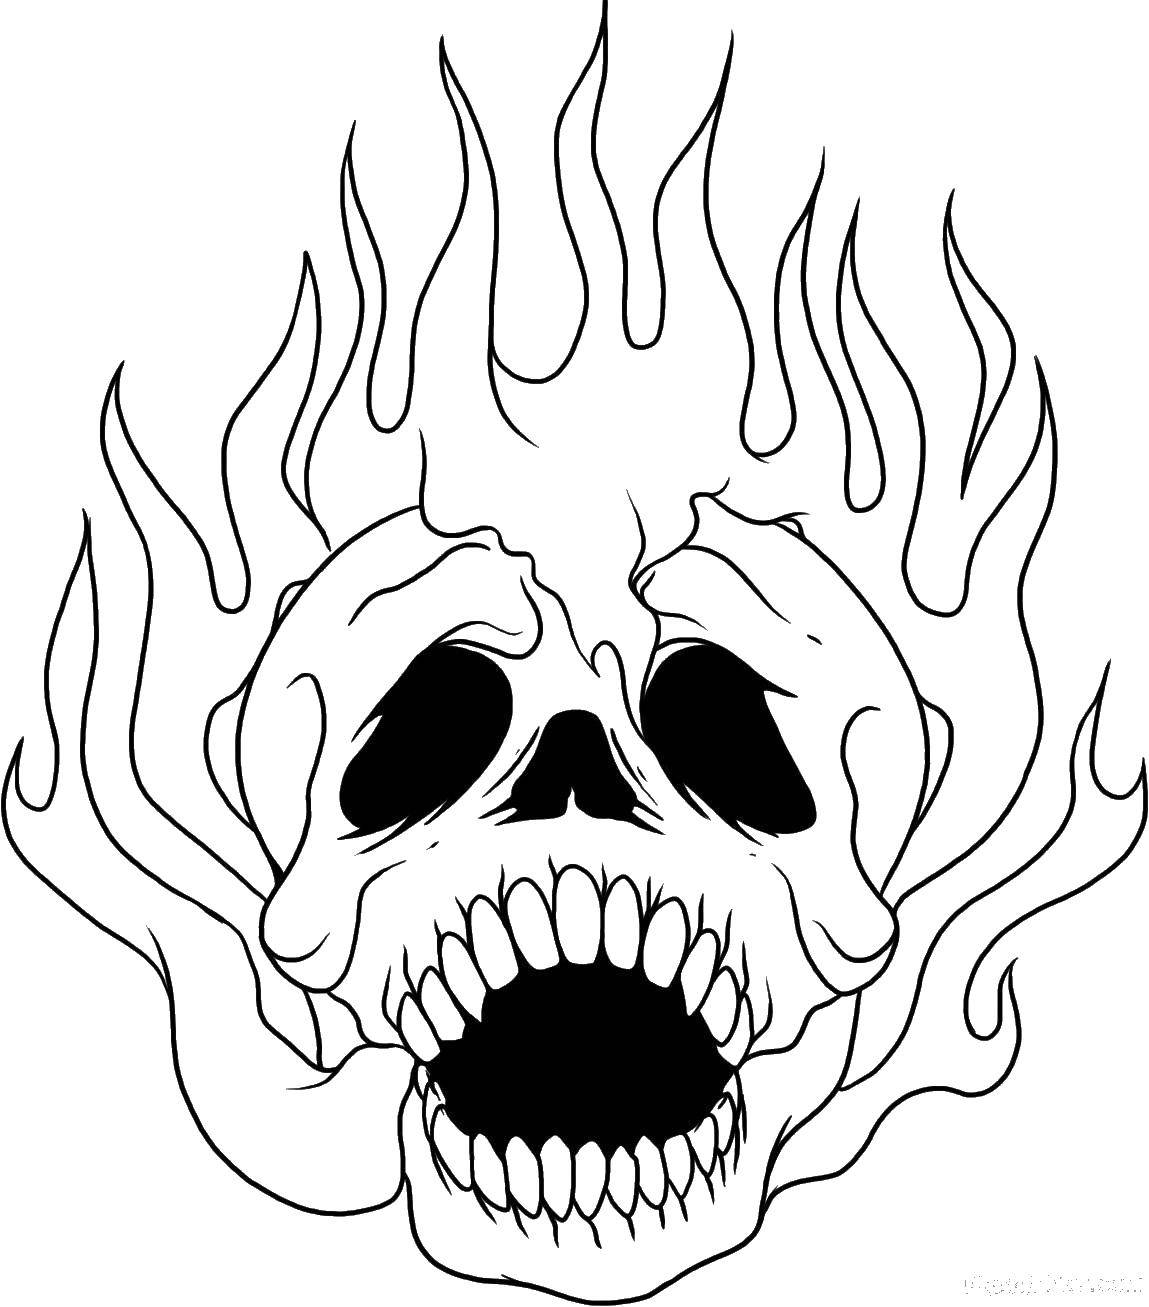 Раскраска с изображением черепа, огня и пламени (череп, пламя)